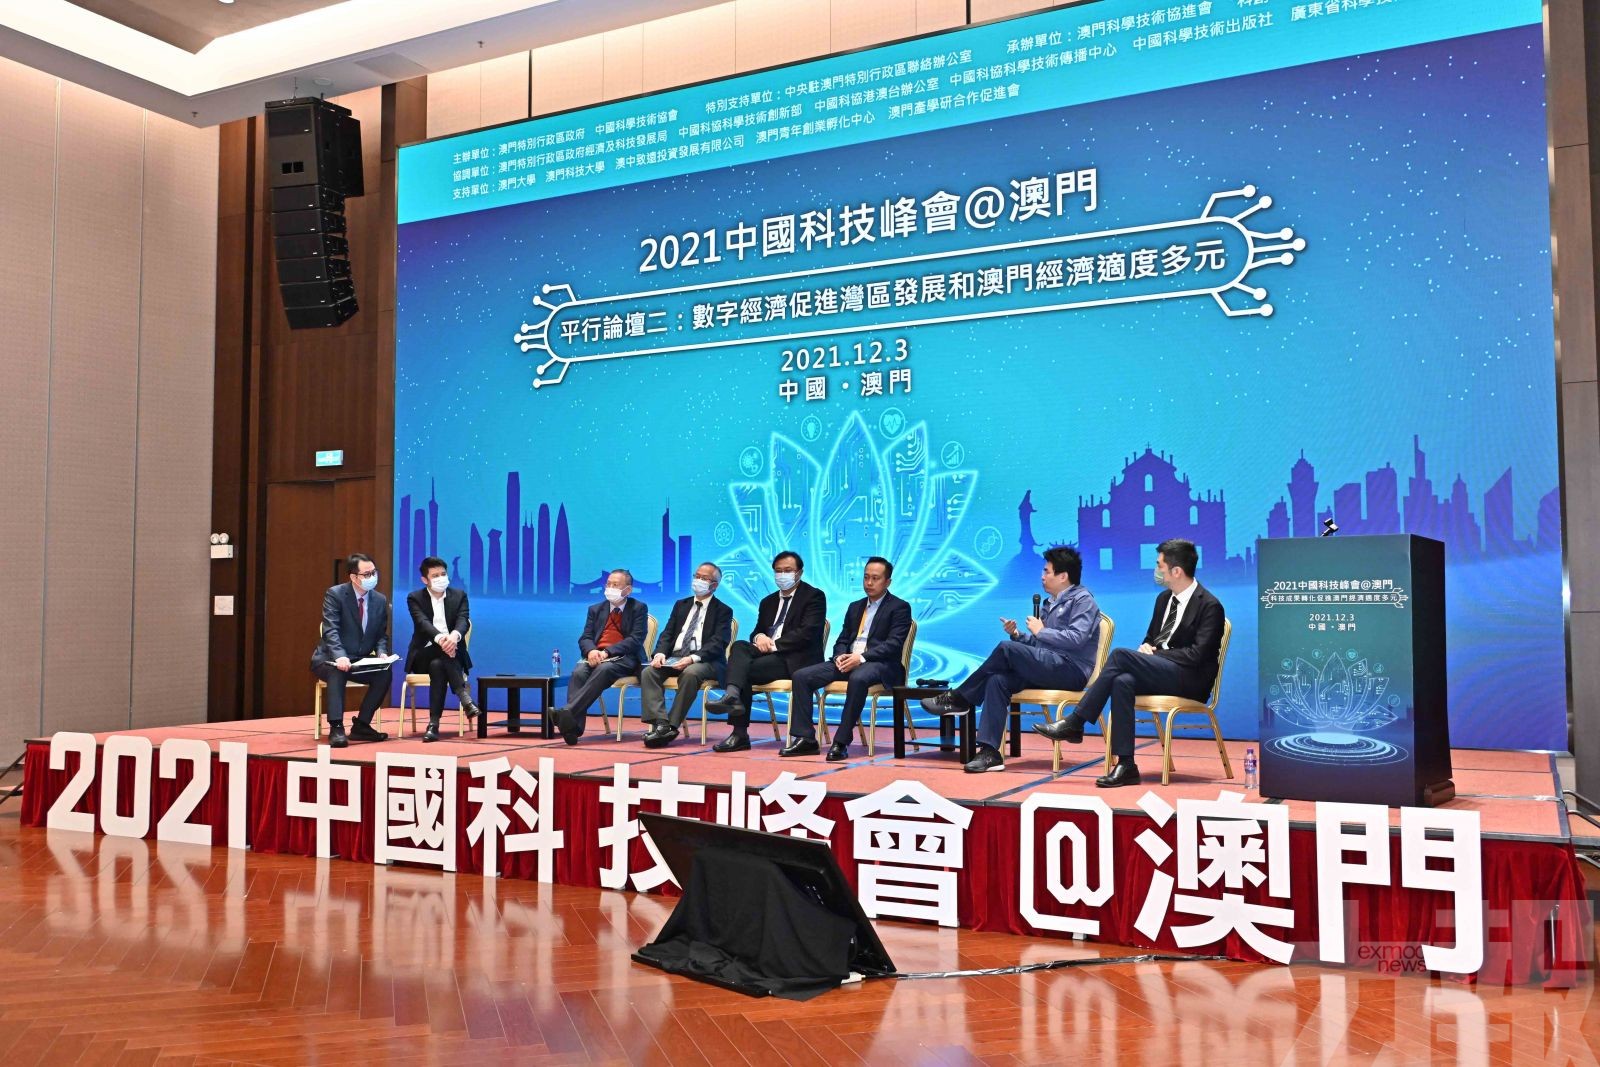 「2021中國科技峰會」兩分論壇在澳門舉辦